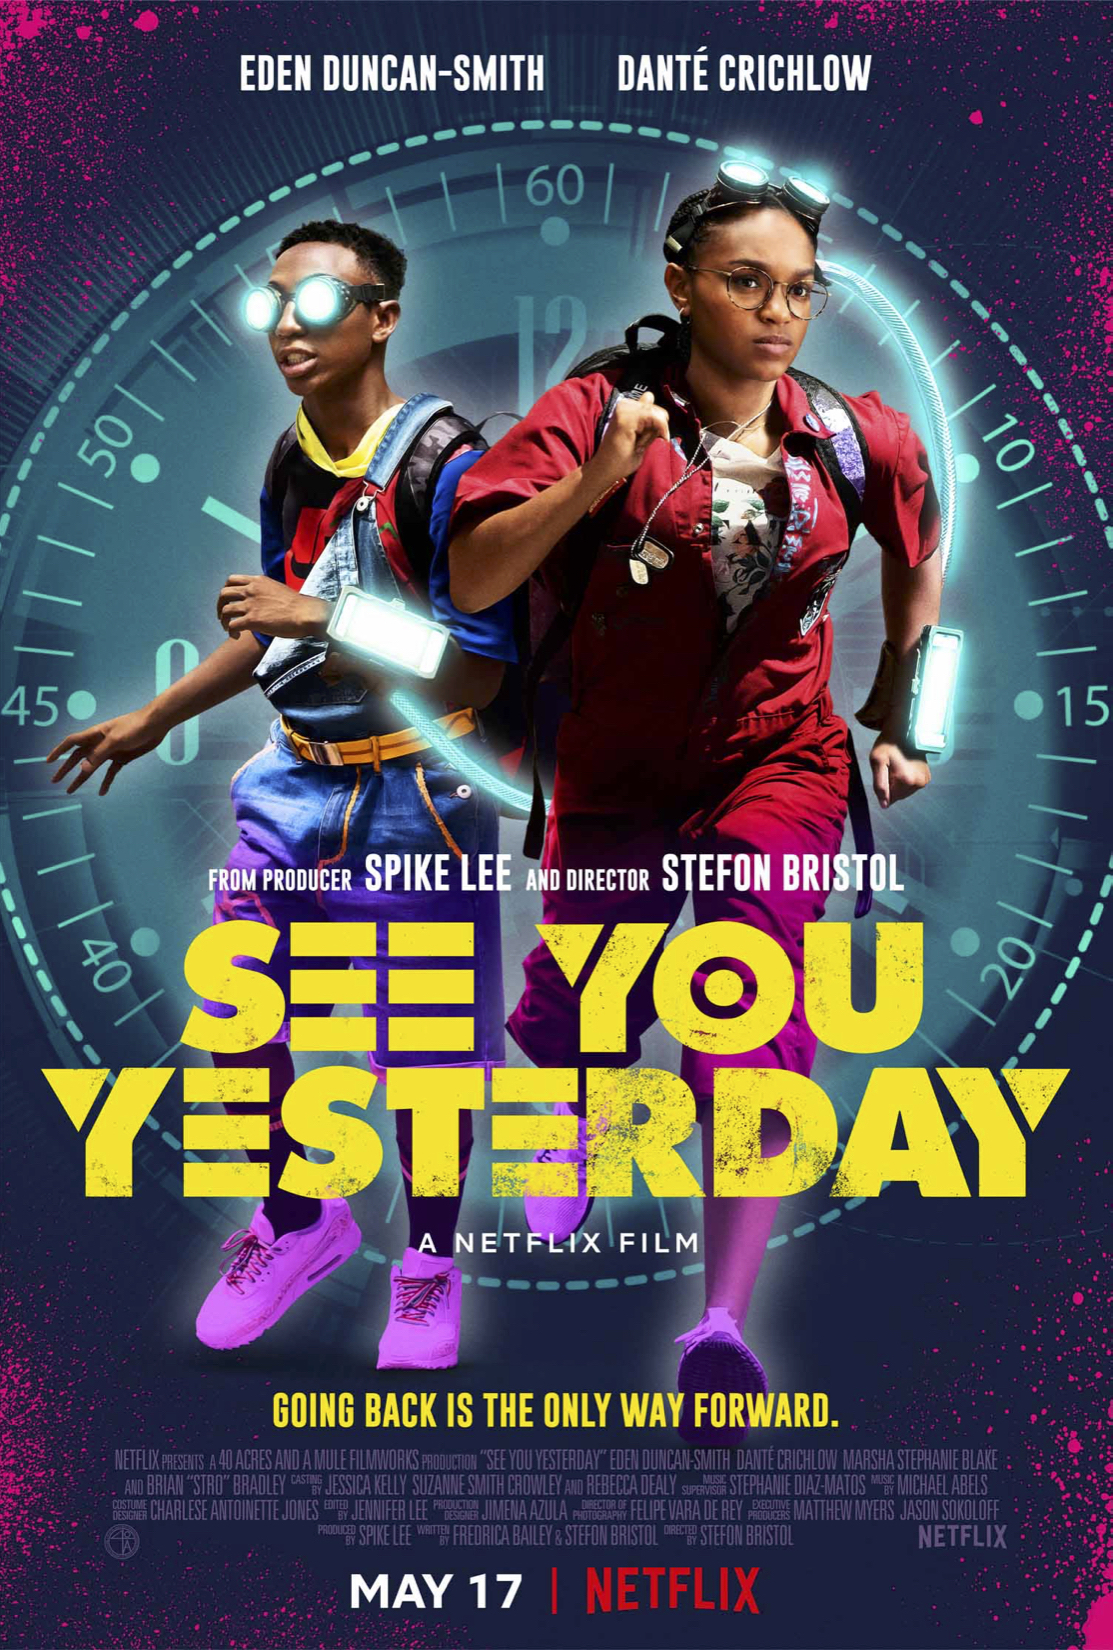 See You Yesterday (2019) ย้อนเวลายื้อชีวิต Eden Duncan-Smith